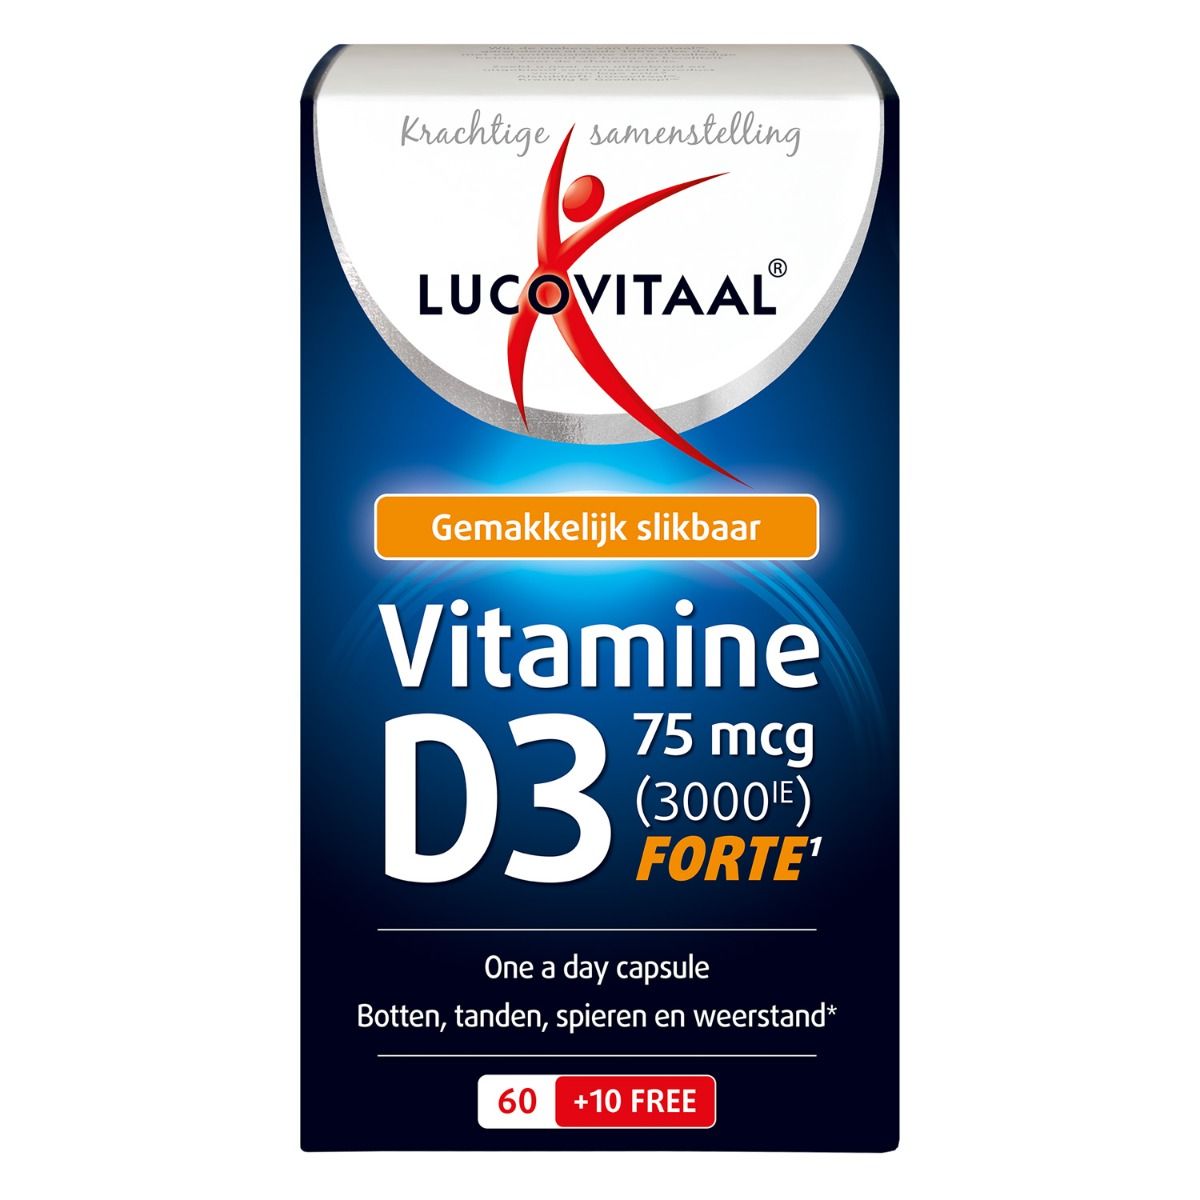 mat nabootsen Verduisteren Vitamine D3 75 mcg - Lucovitaal: Krachtig & Goedkoop!